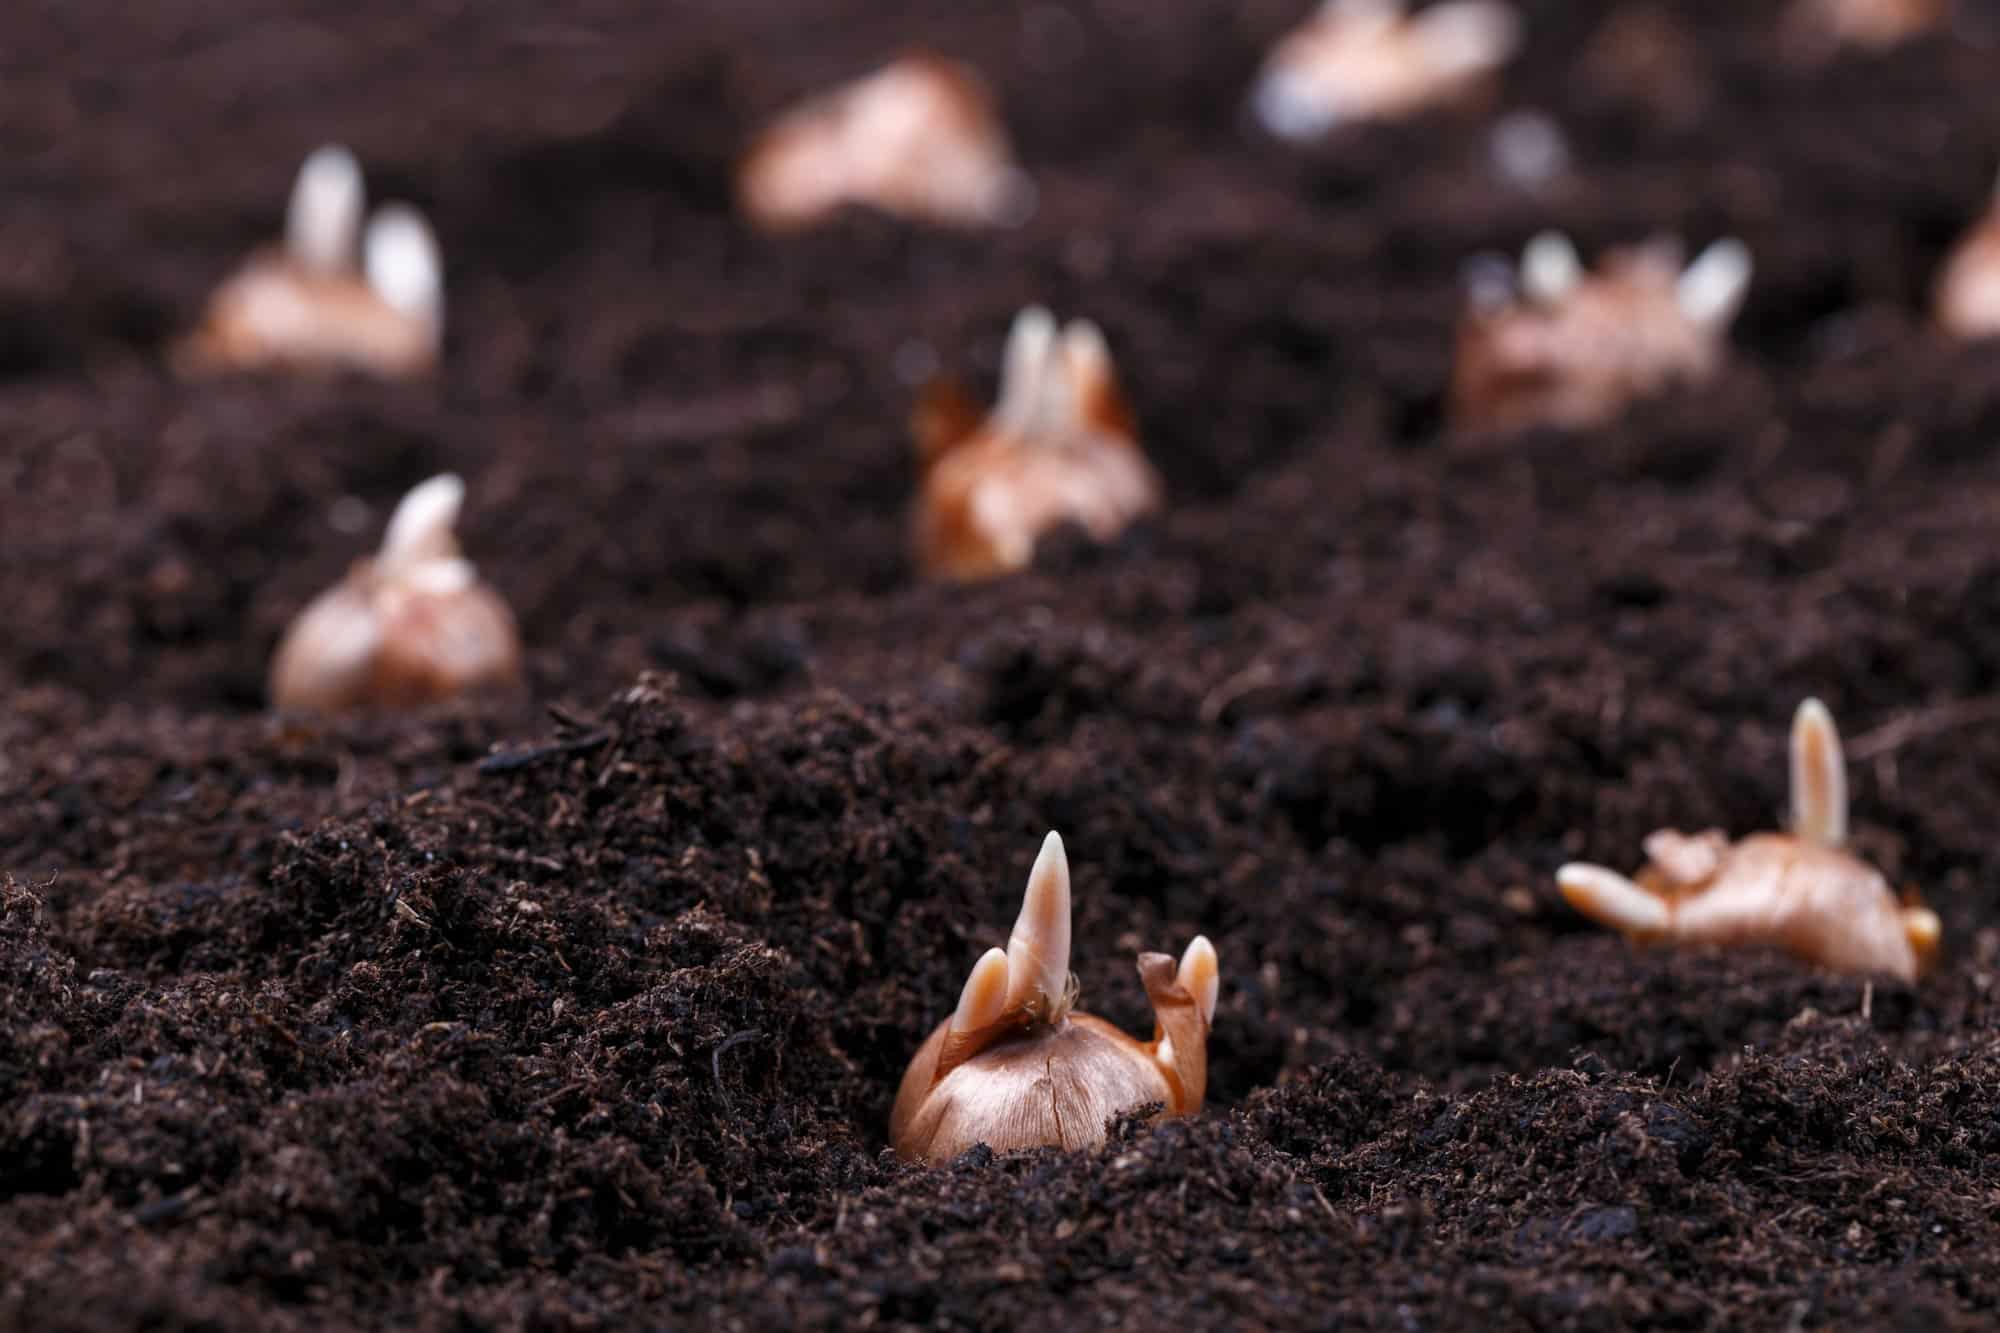 Flower bulbs in a soil